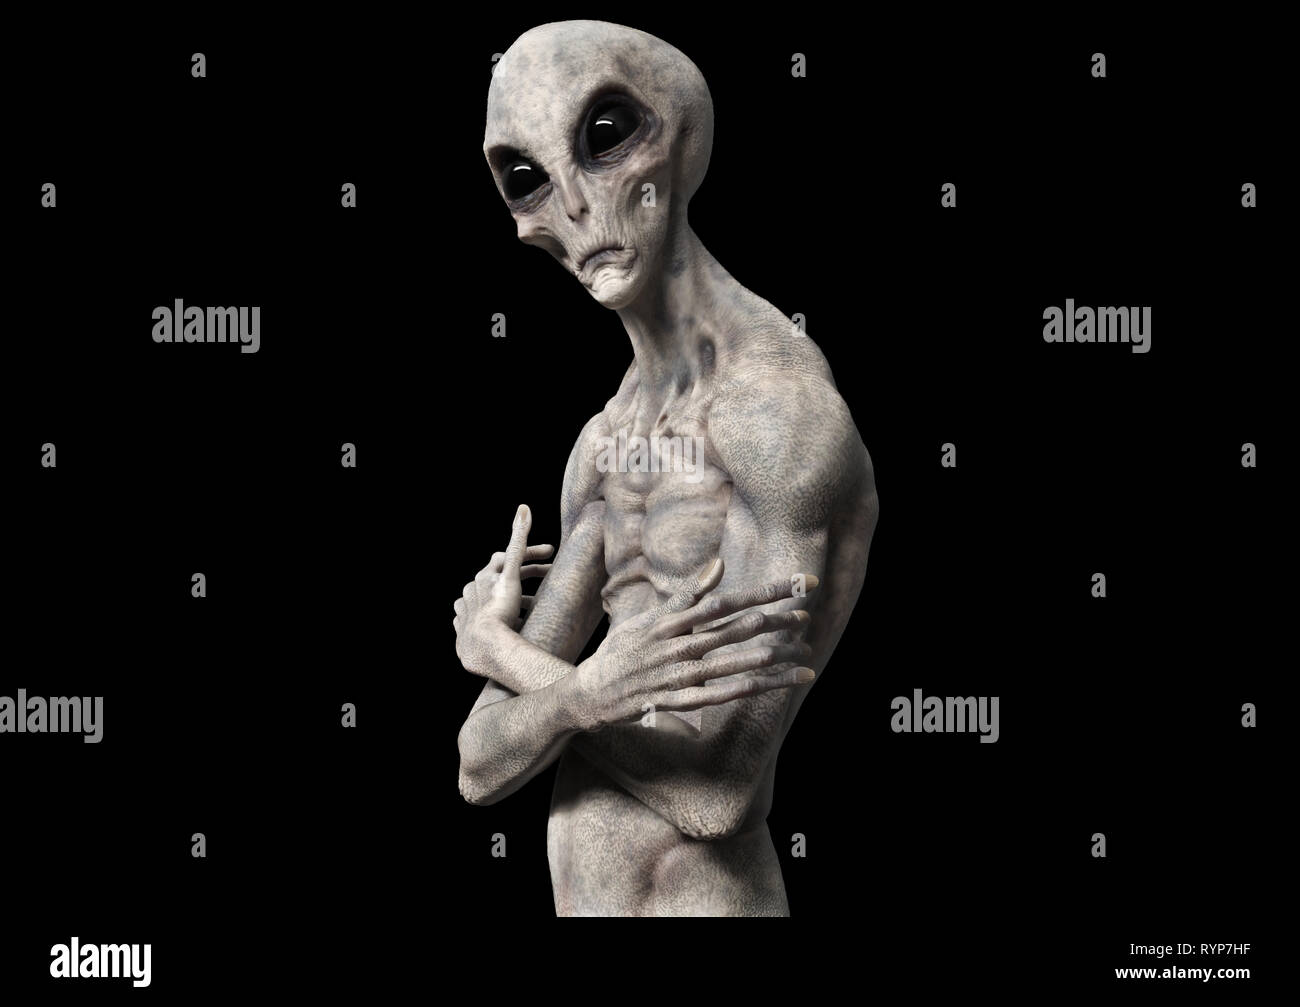 extraterrestrial life or alien - 3d rendering Stock Photo